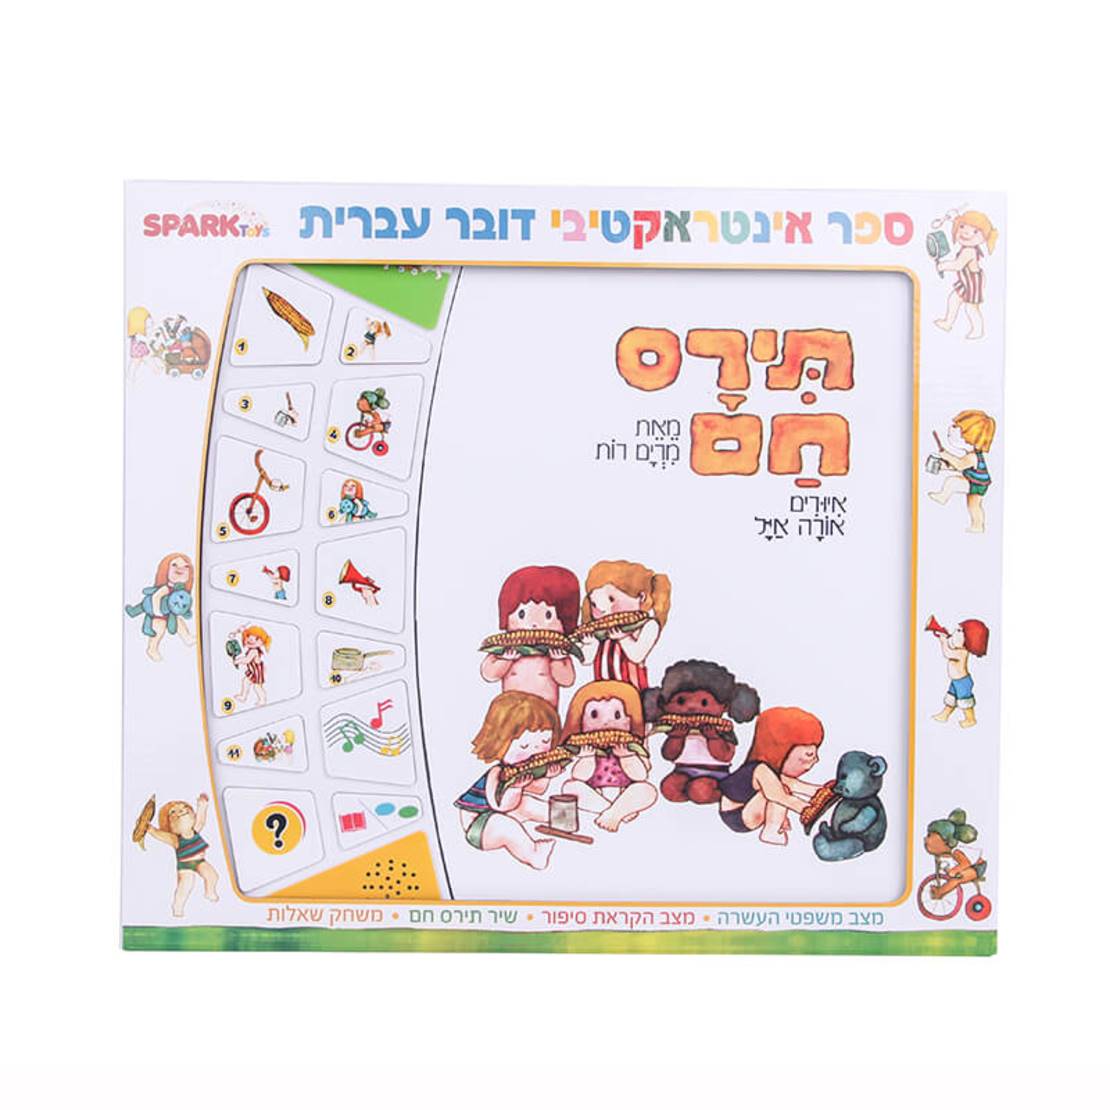 ספר דובר עברית תירס חם - ספר אינטראקטיבי